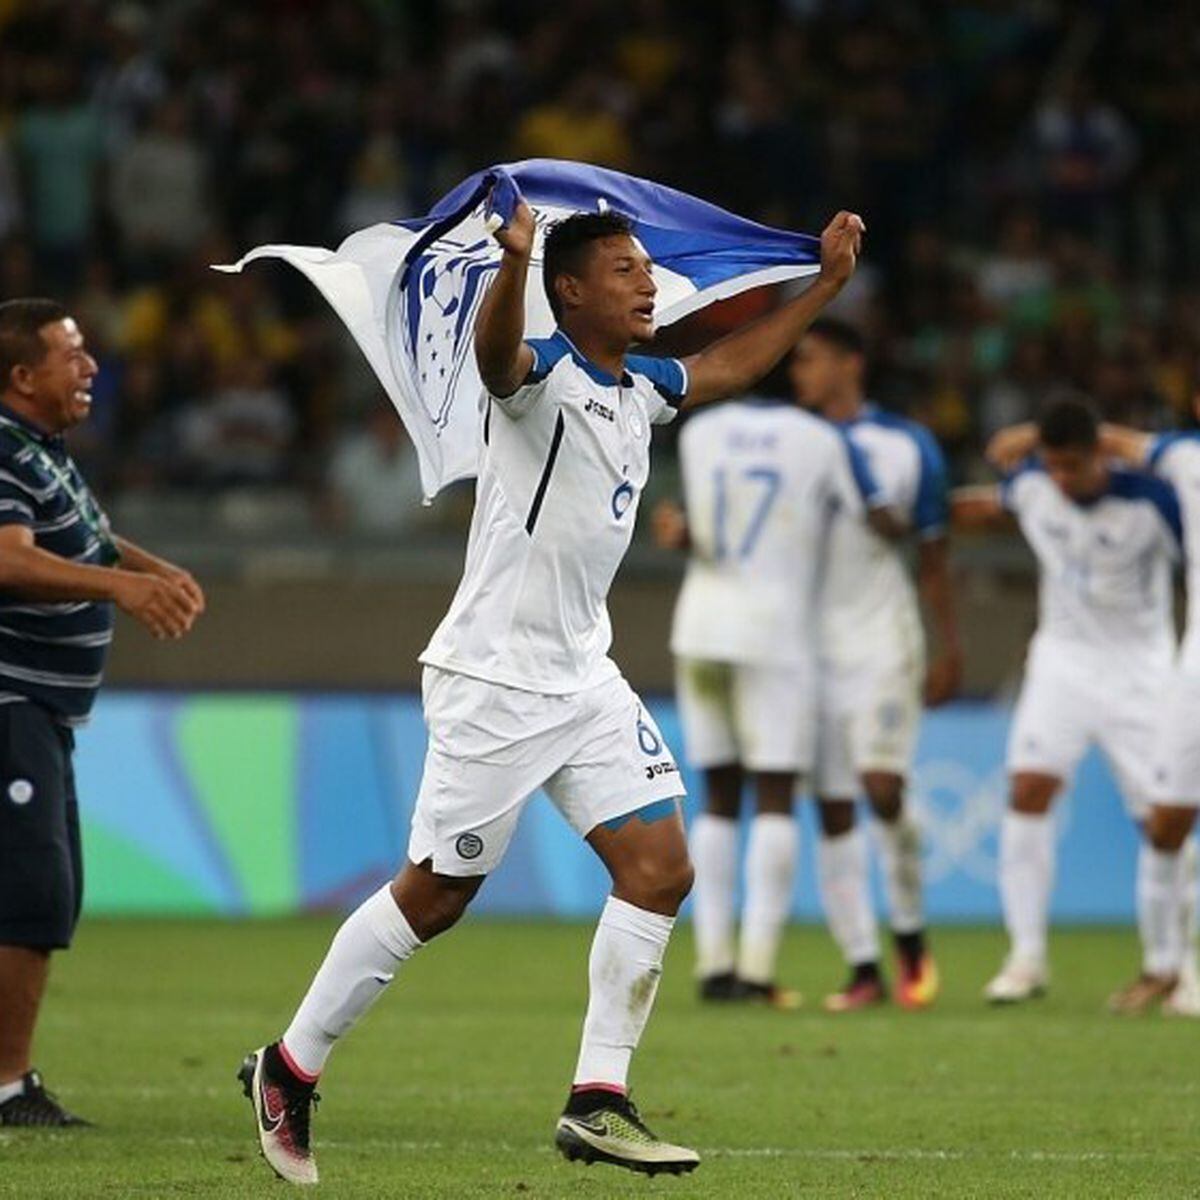 Seleção Brasileira de futebol vence Honduras e vai à semifinal dos